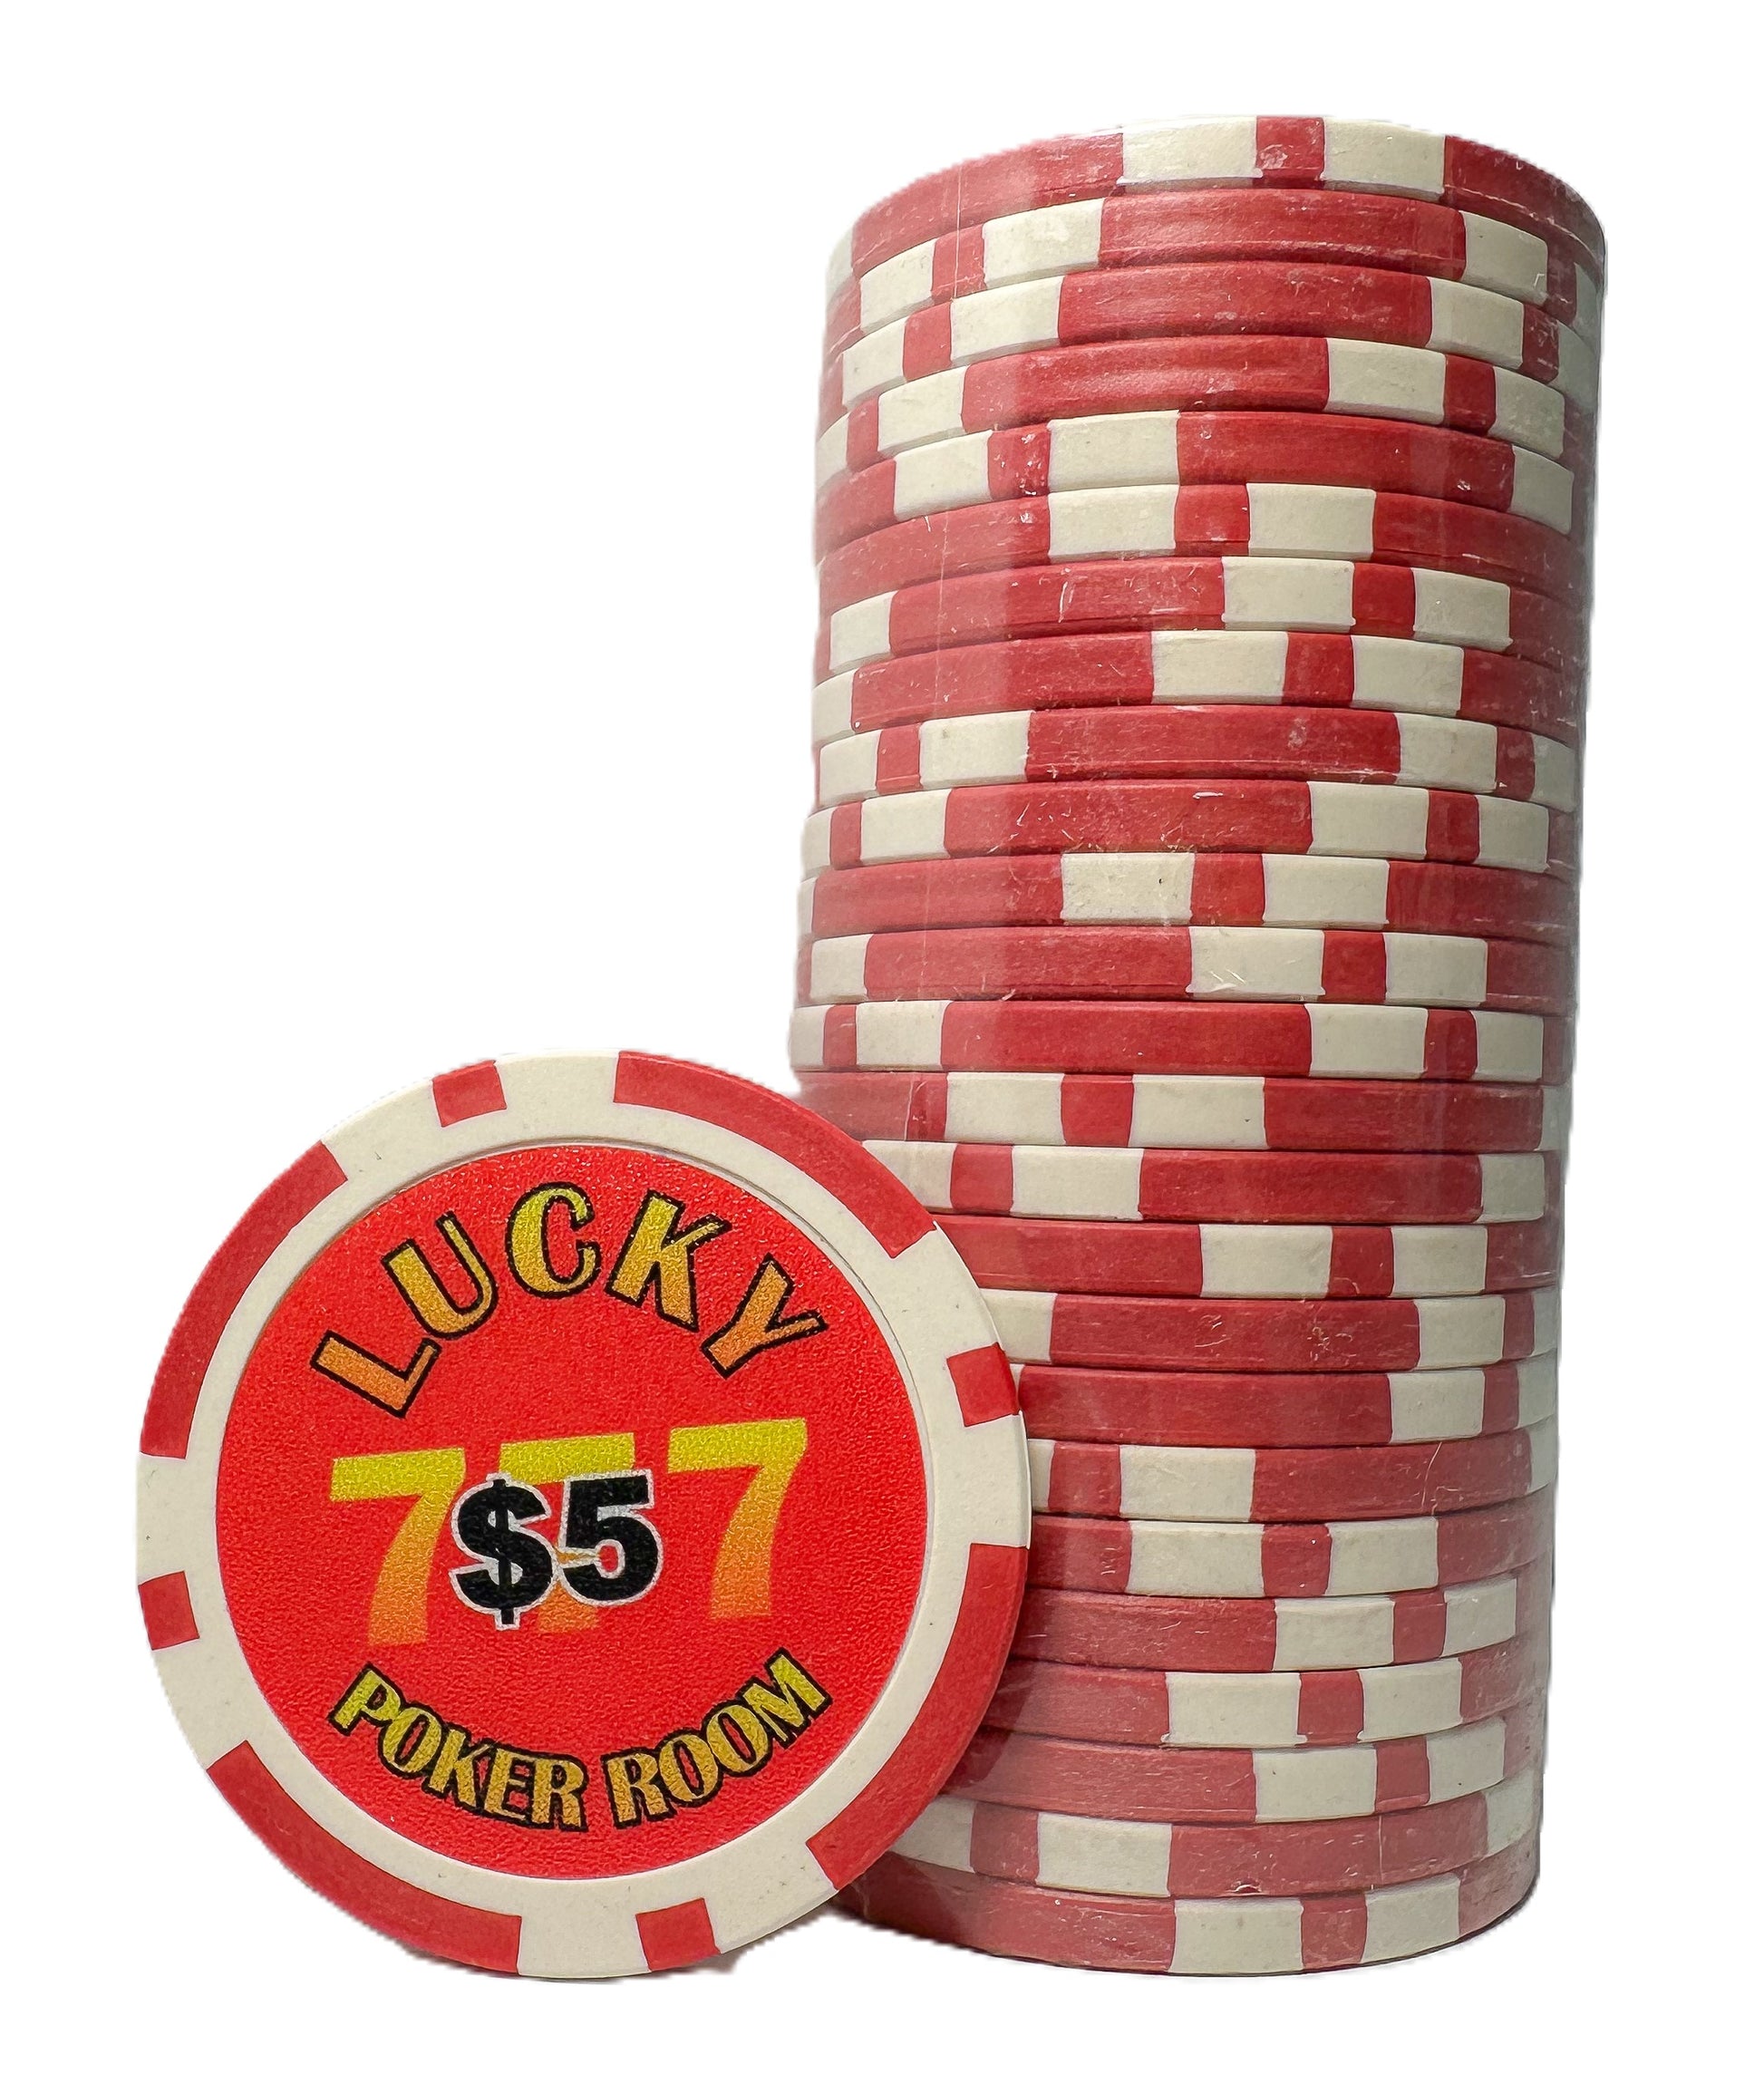 Lucky Poker Room $5 Chip